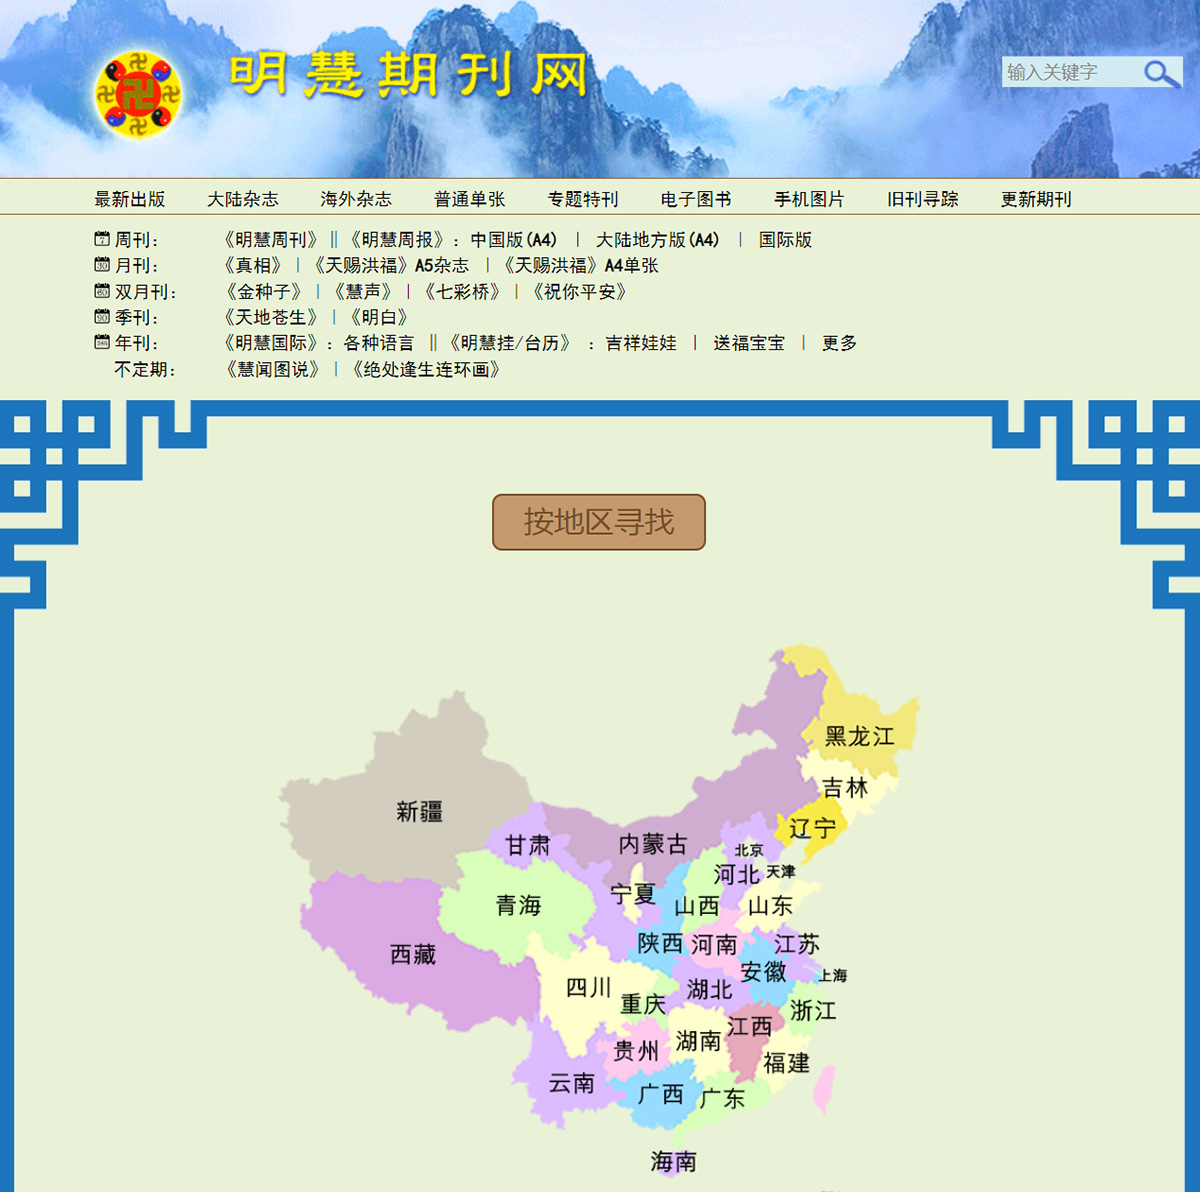 图13：《明慧周报》地方版遍及中国主要省市